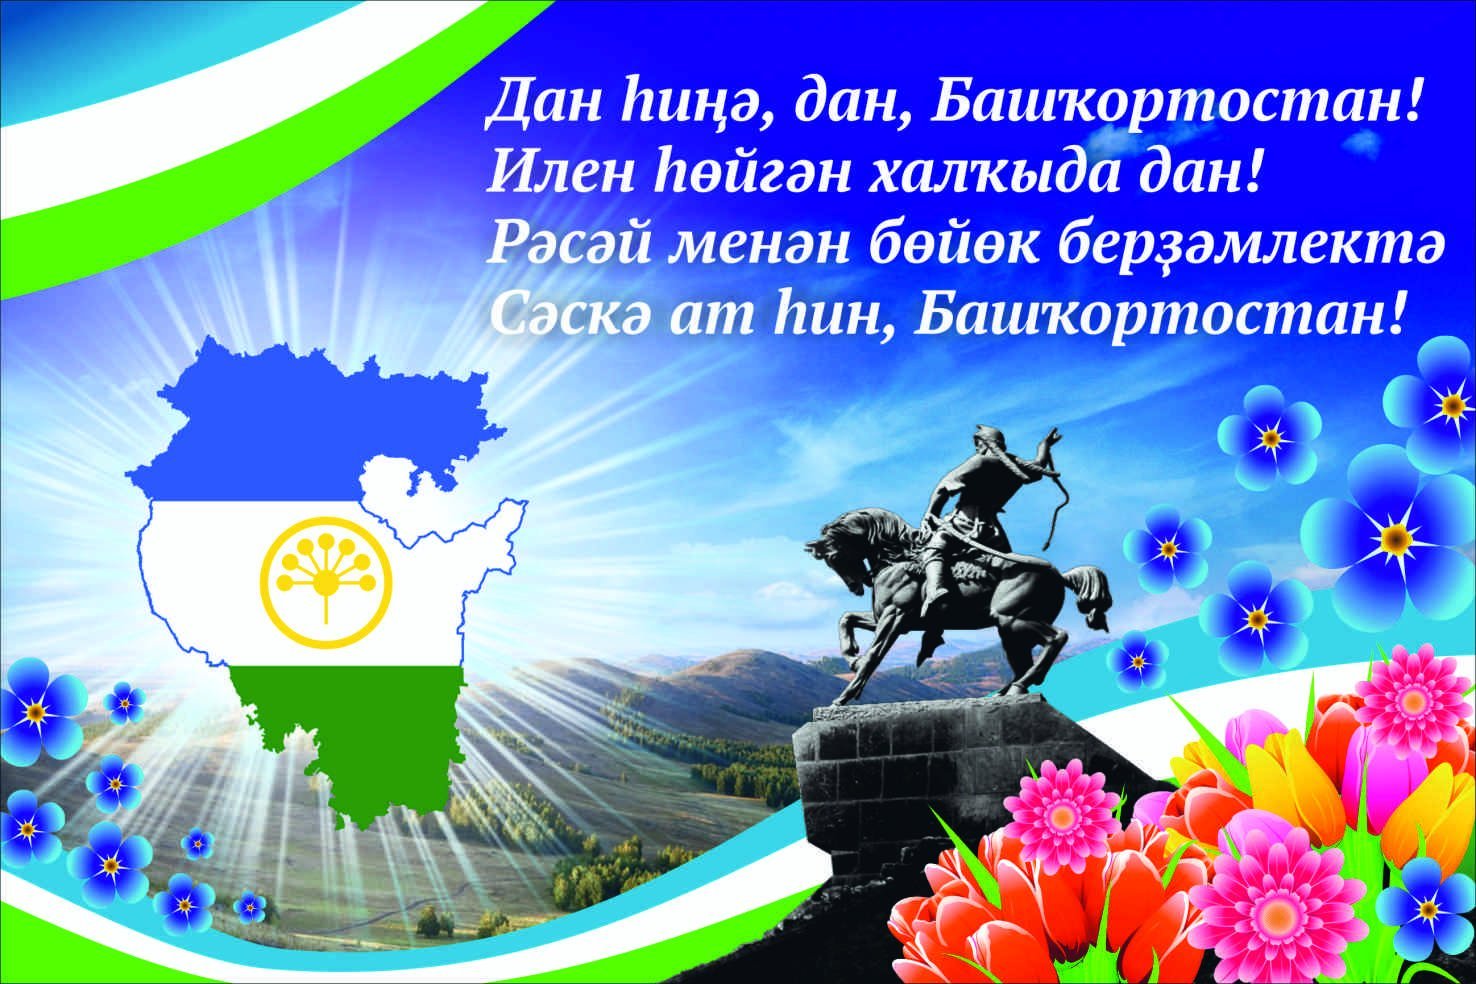 Поздравление с днем Республики Башкортостан